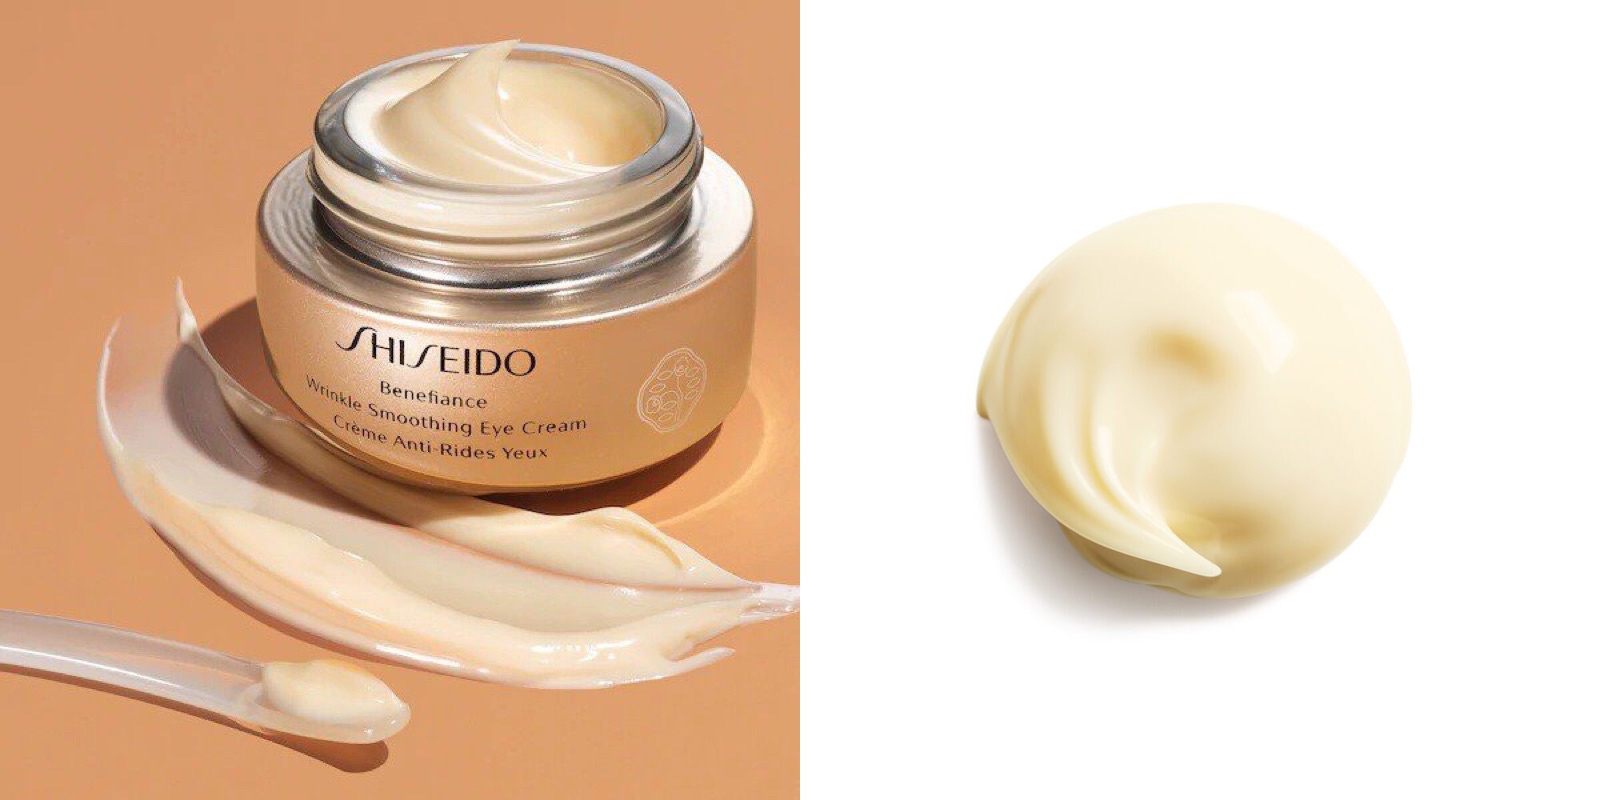 Shiseido Benefiance Wrinkle Smoothing Eye Cream giúp cải thiện khả năng tiếp nhận của da